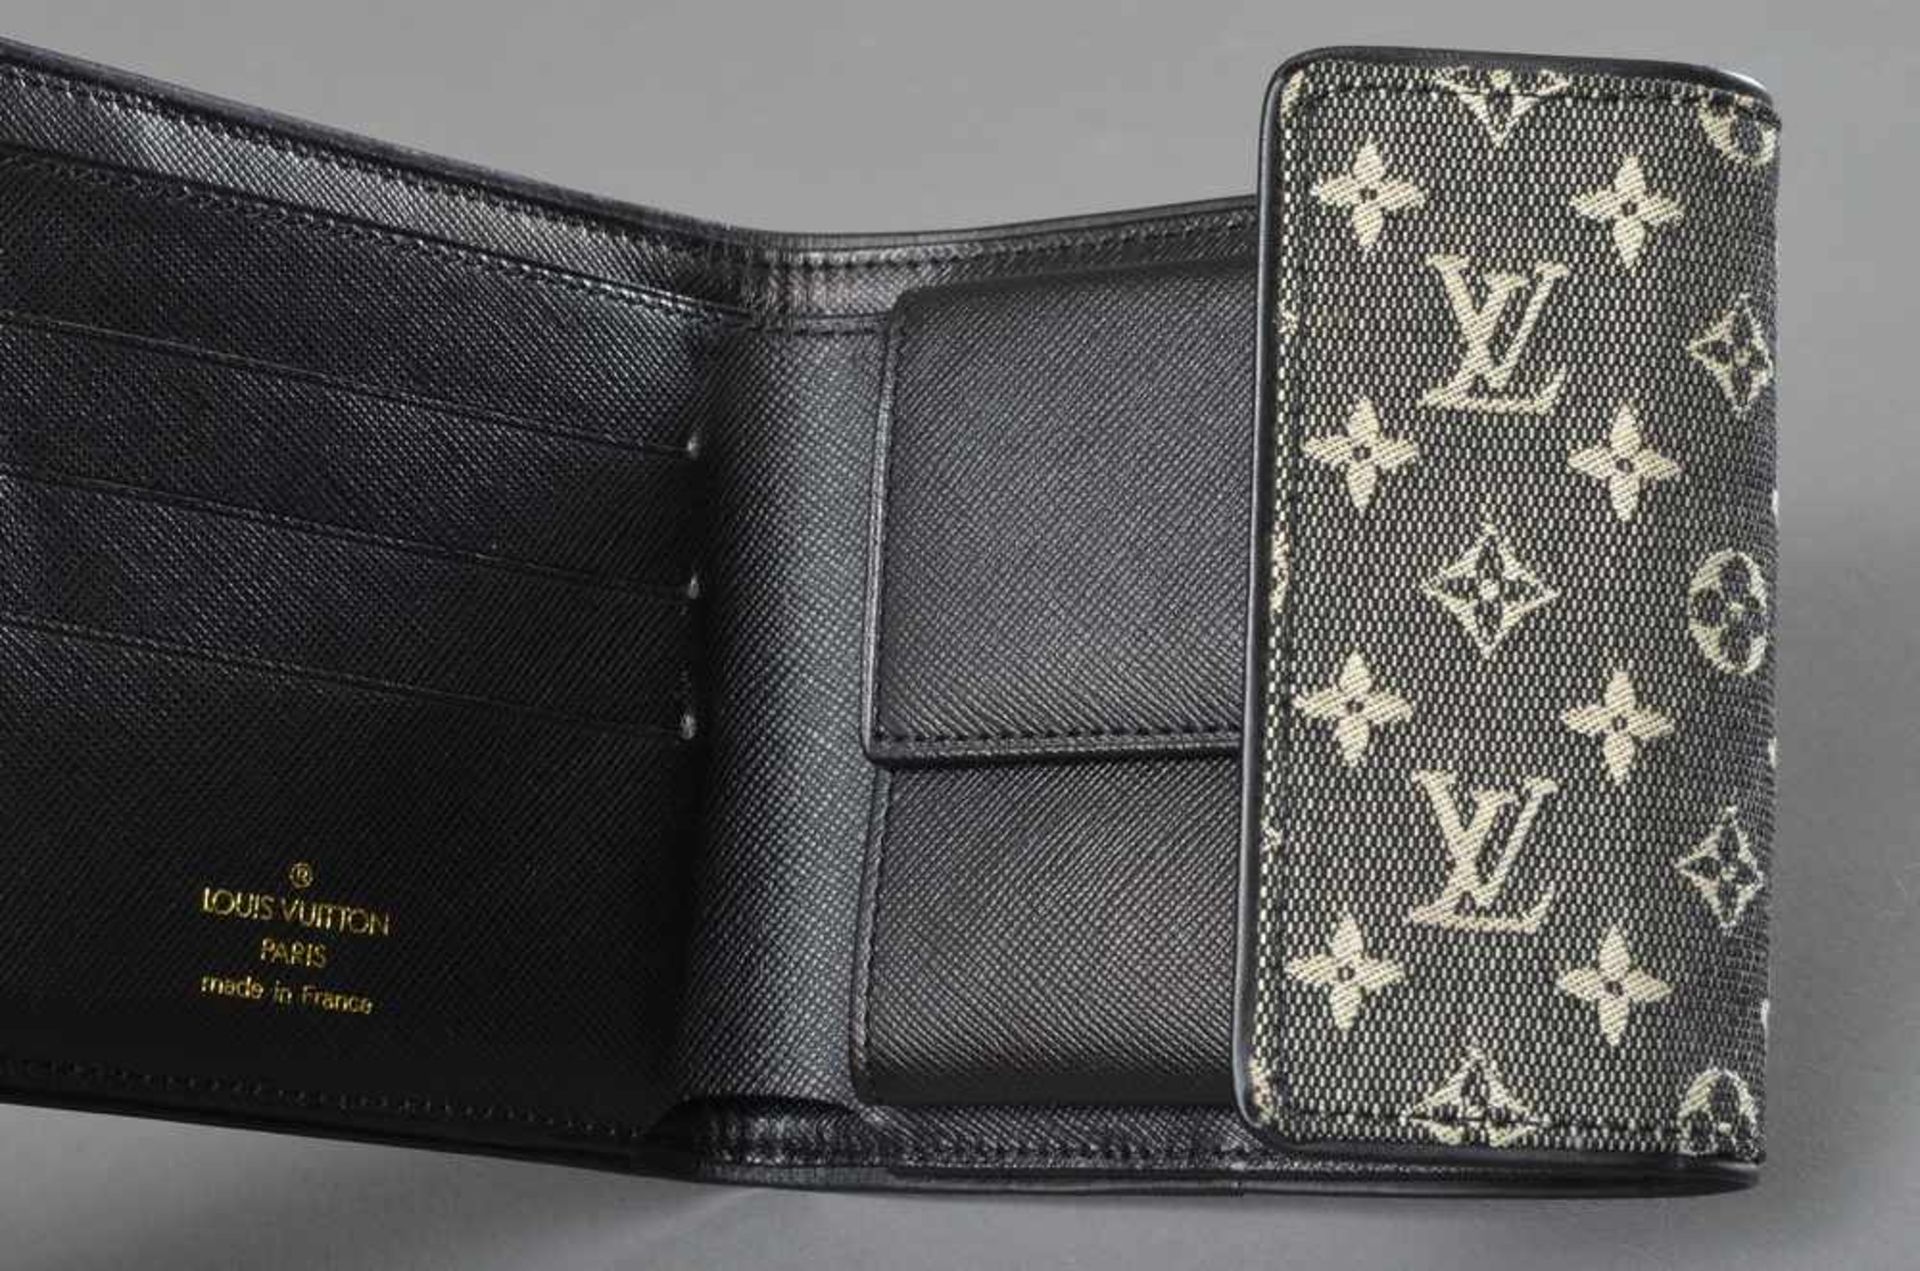 Louis Vuitton Portemonnaie, Monogram Lin schwarz/weiß, Nr. TH 0065, 11x12cm, neu - Bild 2 aus 2